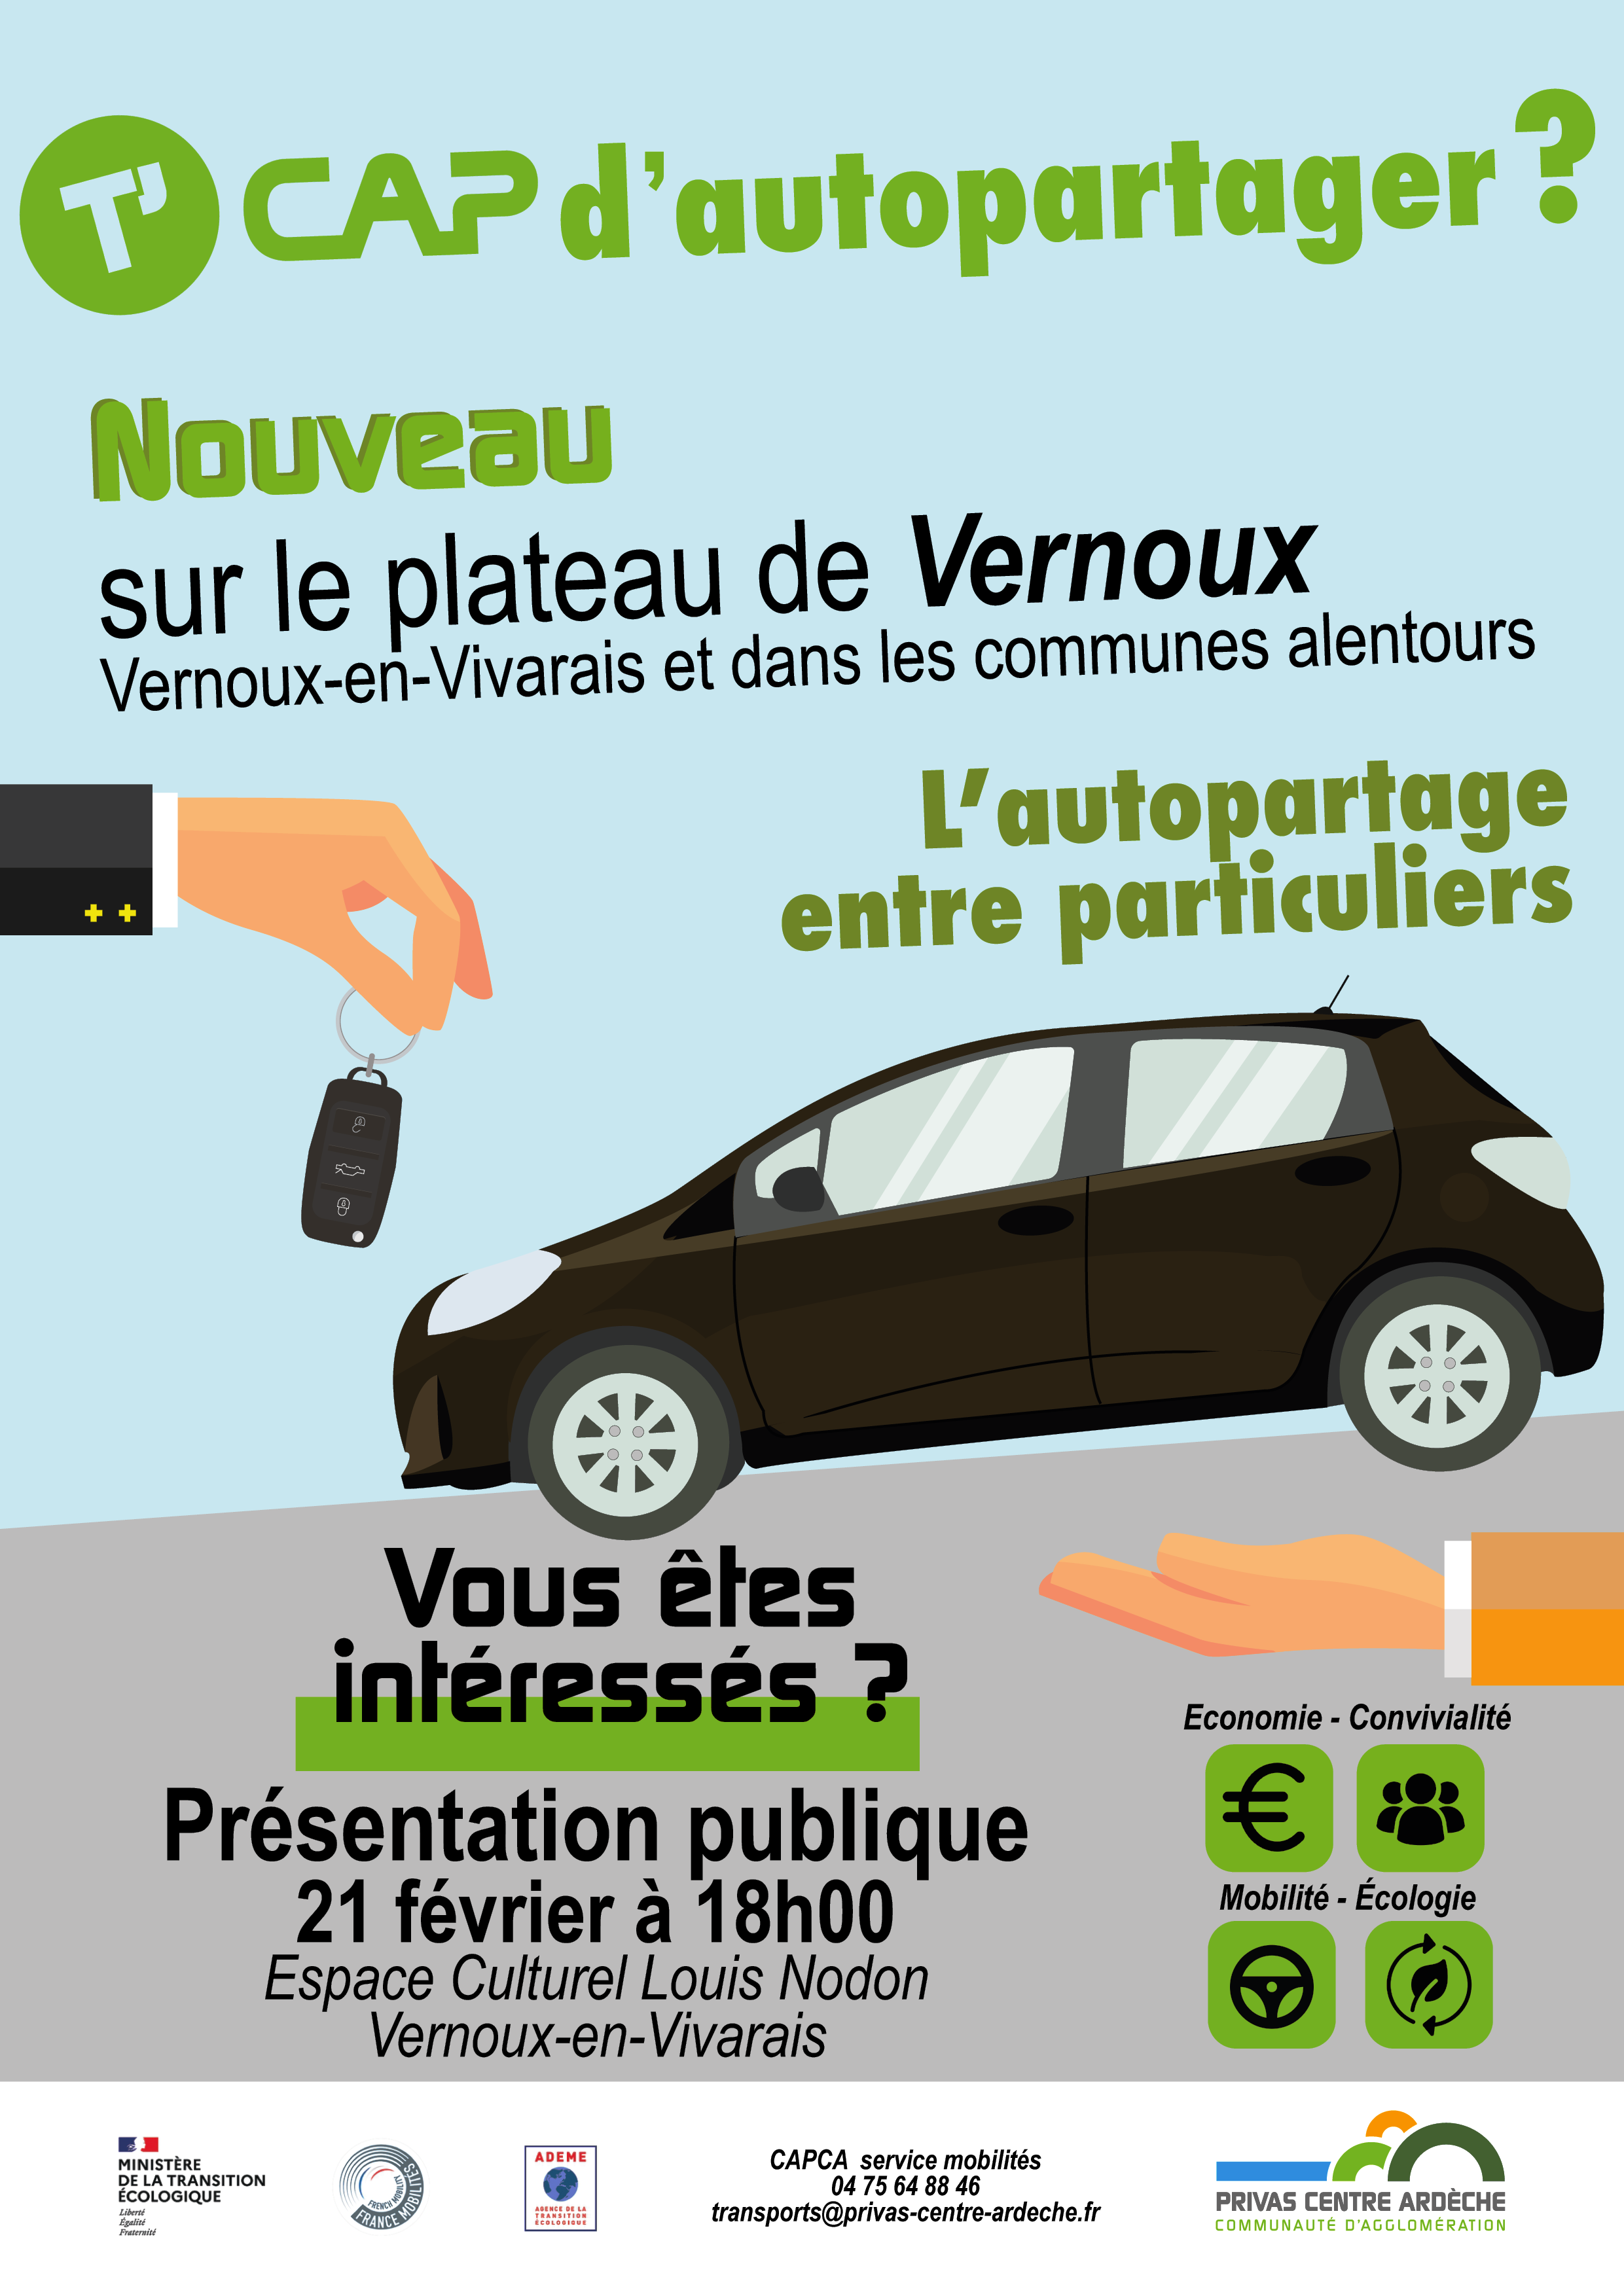 Alle leuke evenementen! : Réunion publique de présentation du nouveau service d'autopartage entre particuliers sur le Plateau de Vernoux